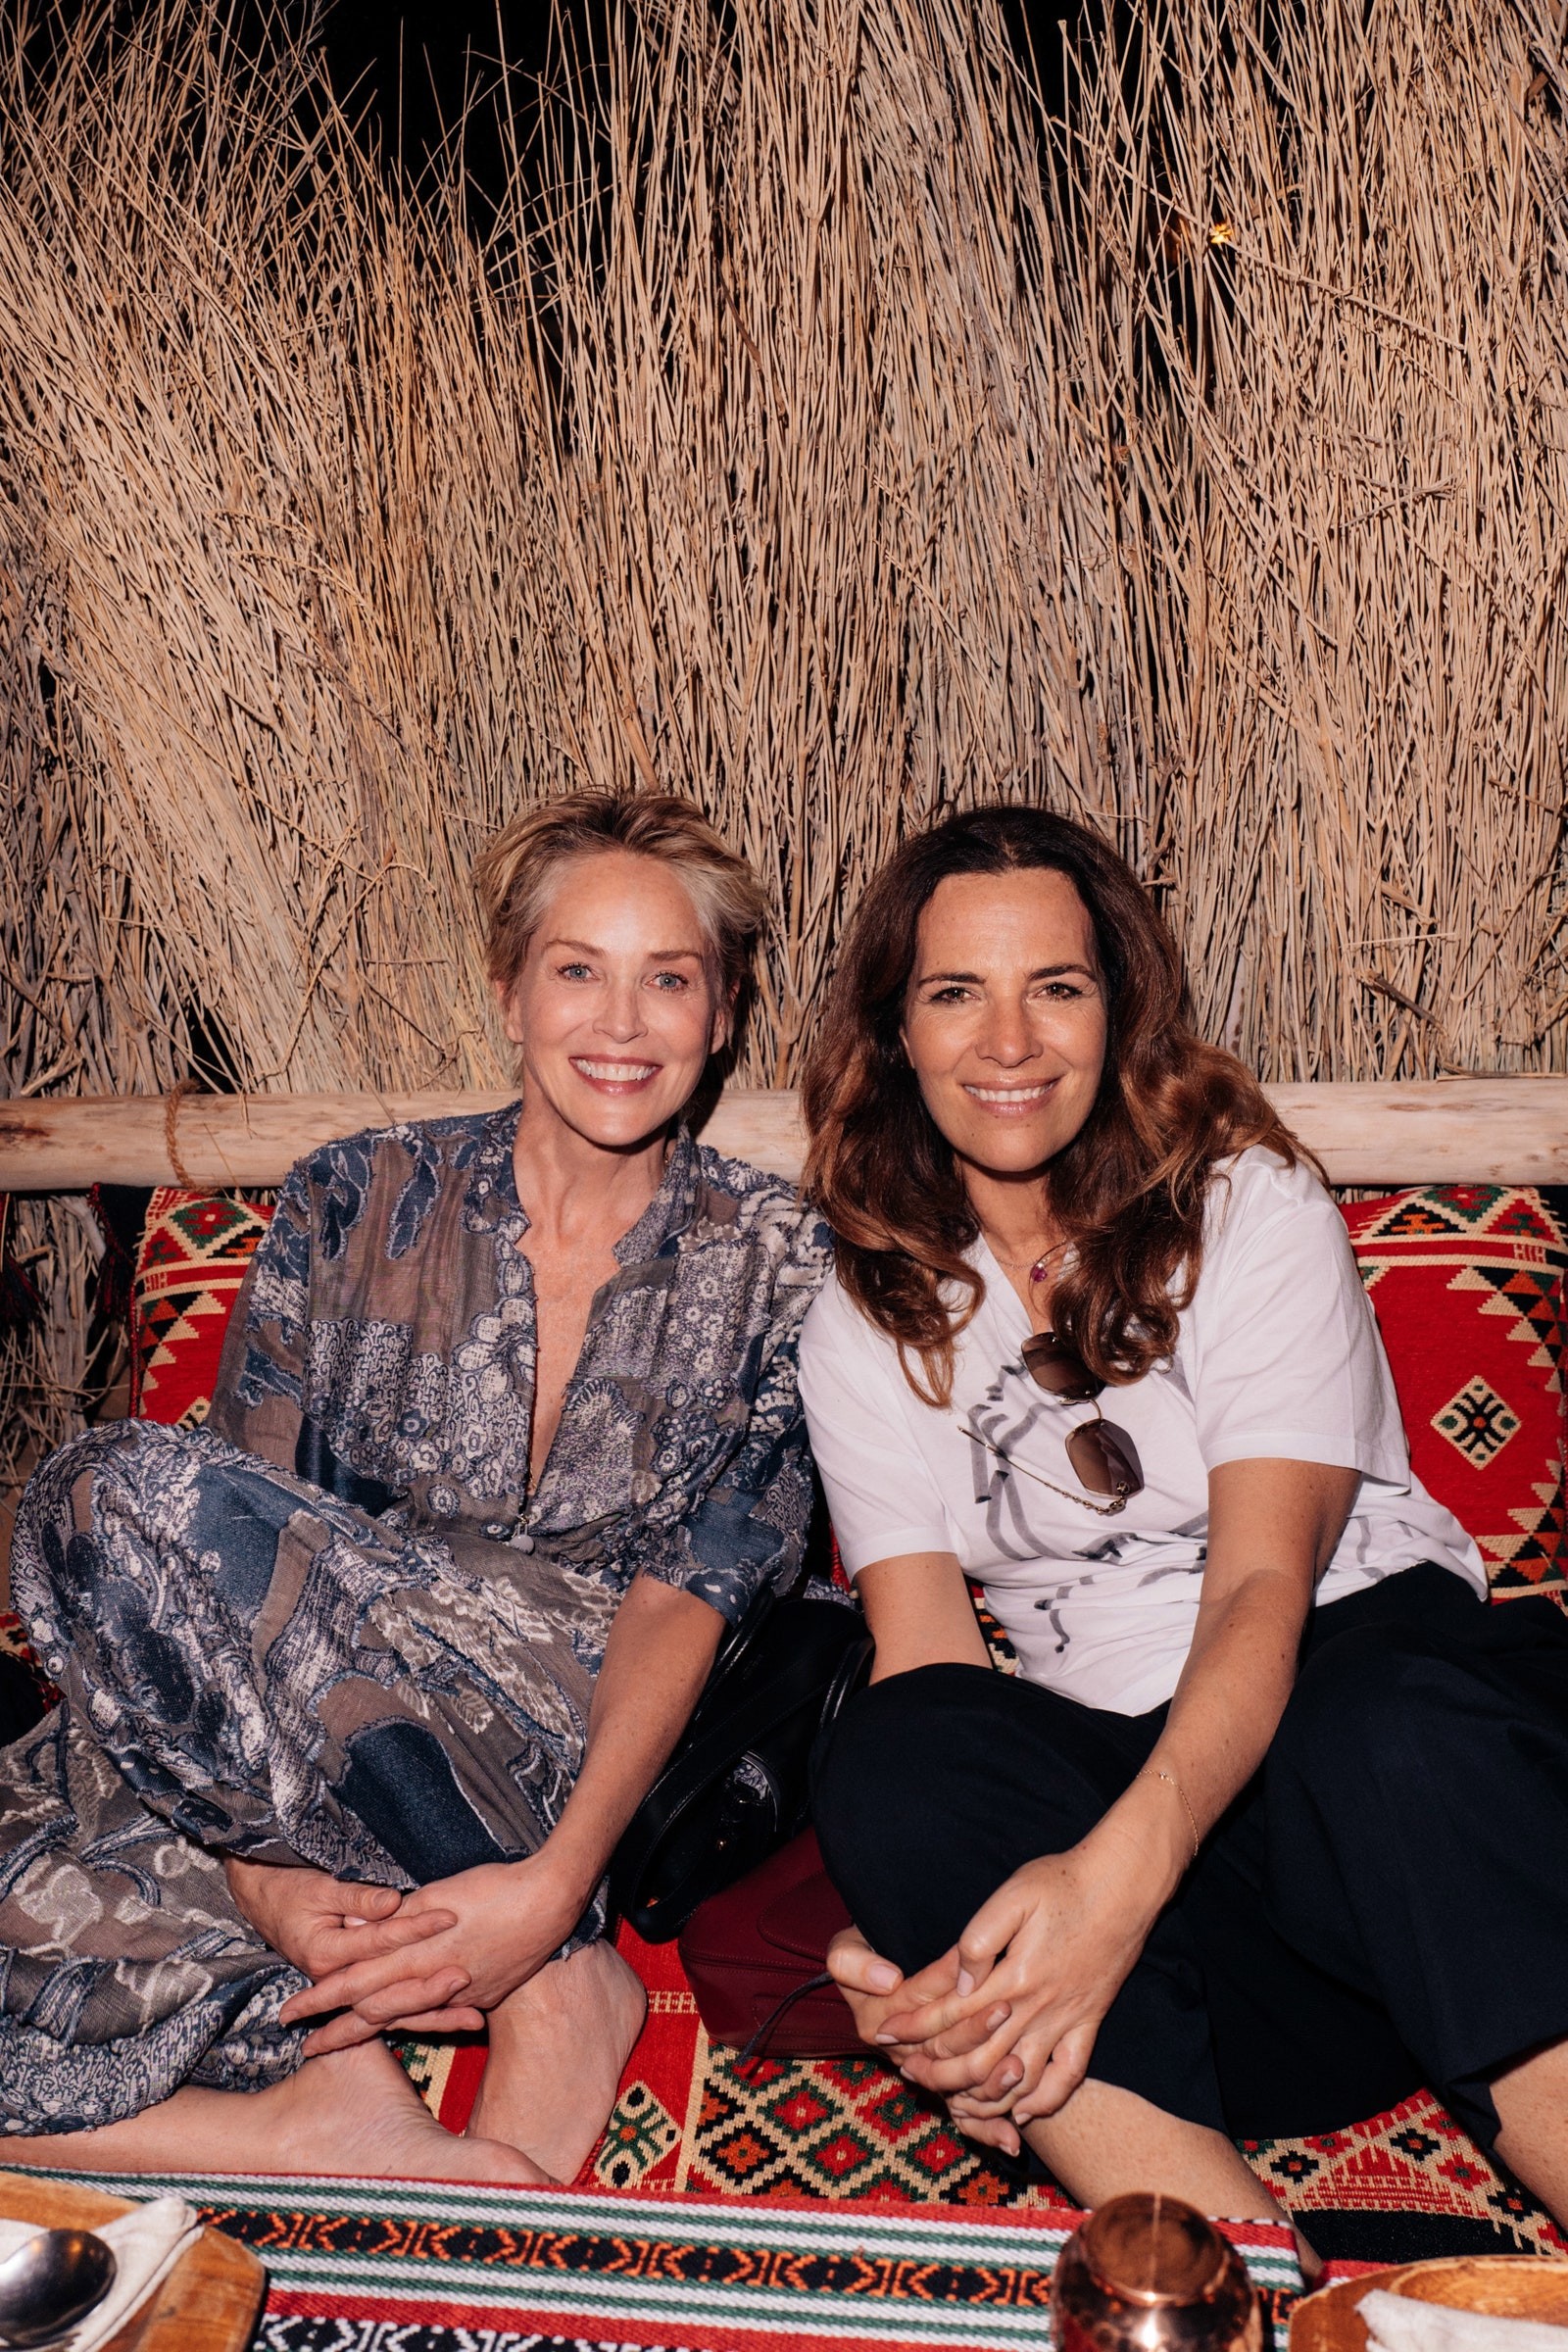 Sharon Stone e Roberta Armani em jantar exclusivo no deserto (Foto: Divulgação )